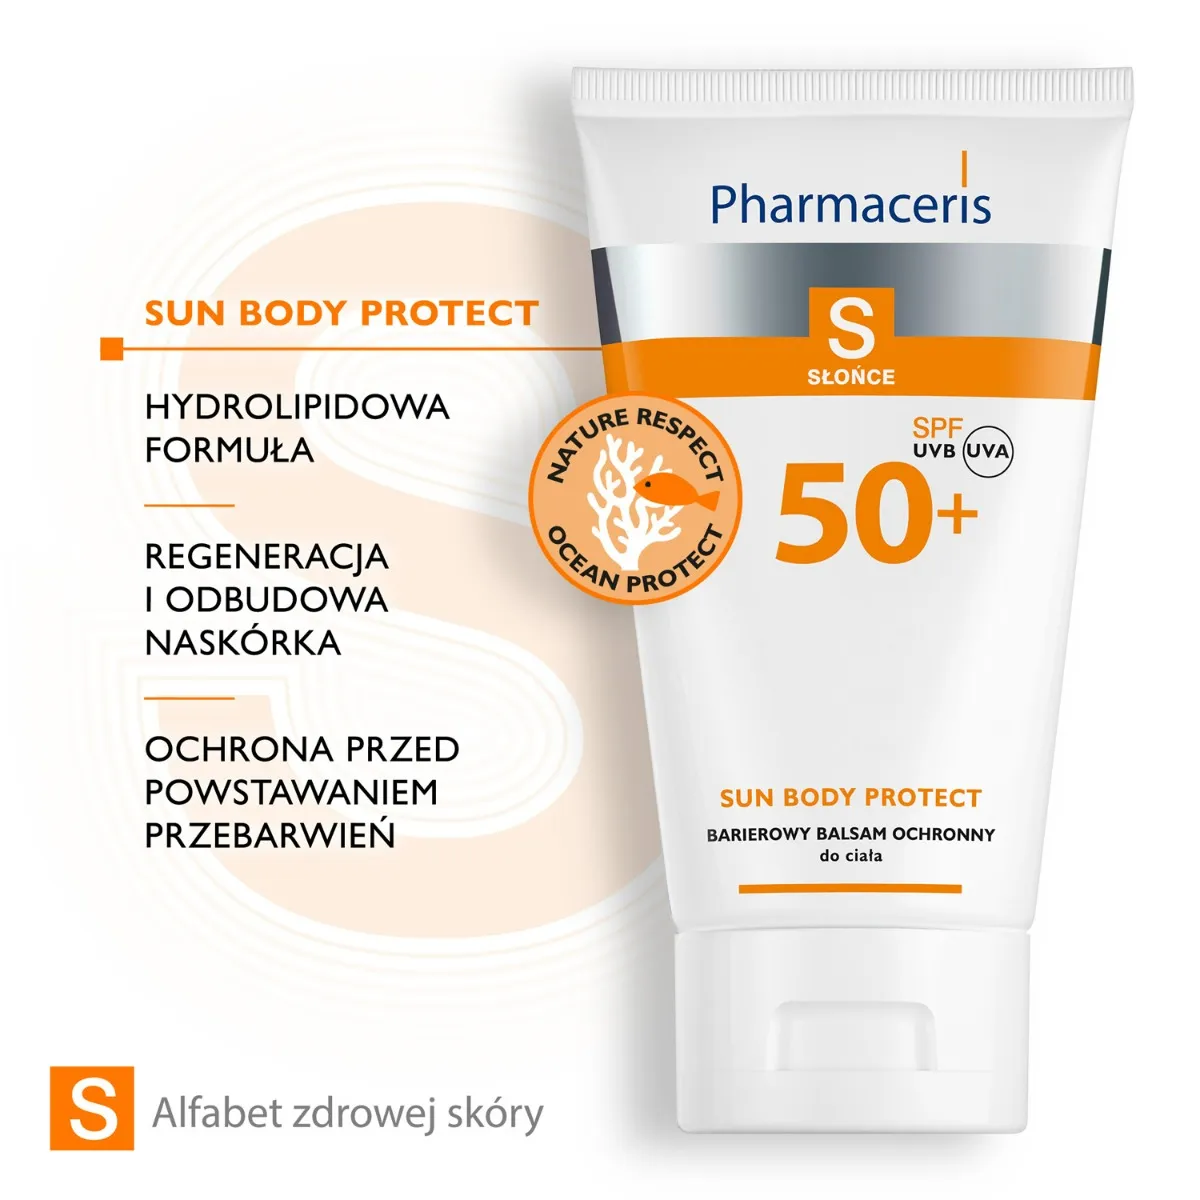 Pharmaceris S Słońce, hydrolipidowy ochronny balsam do ciała, SPF 50+ / 150 ml 